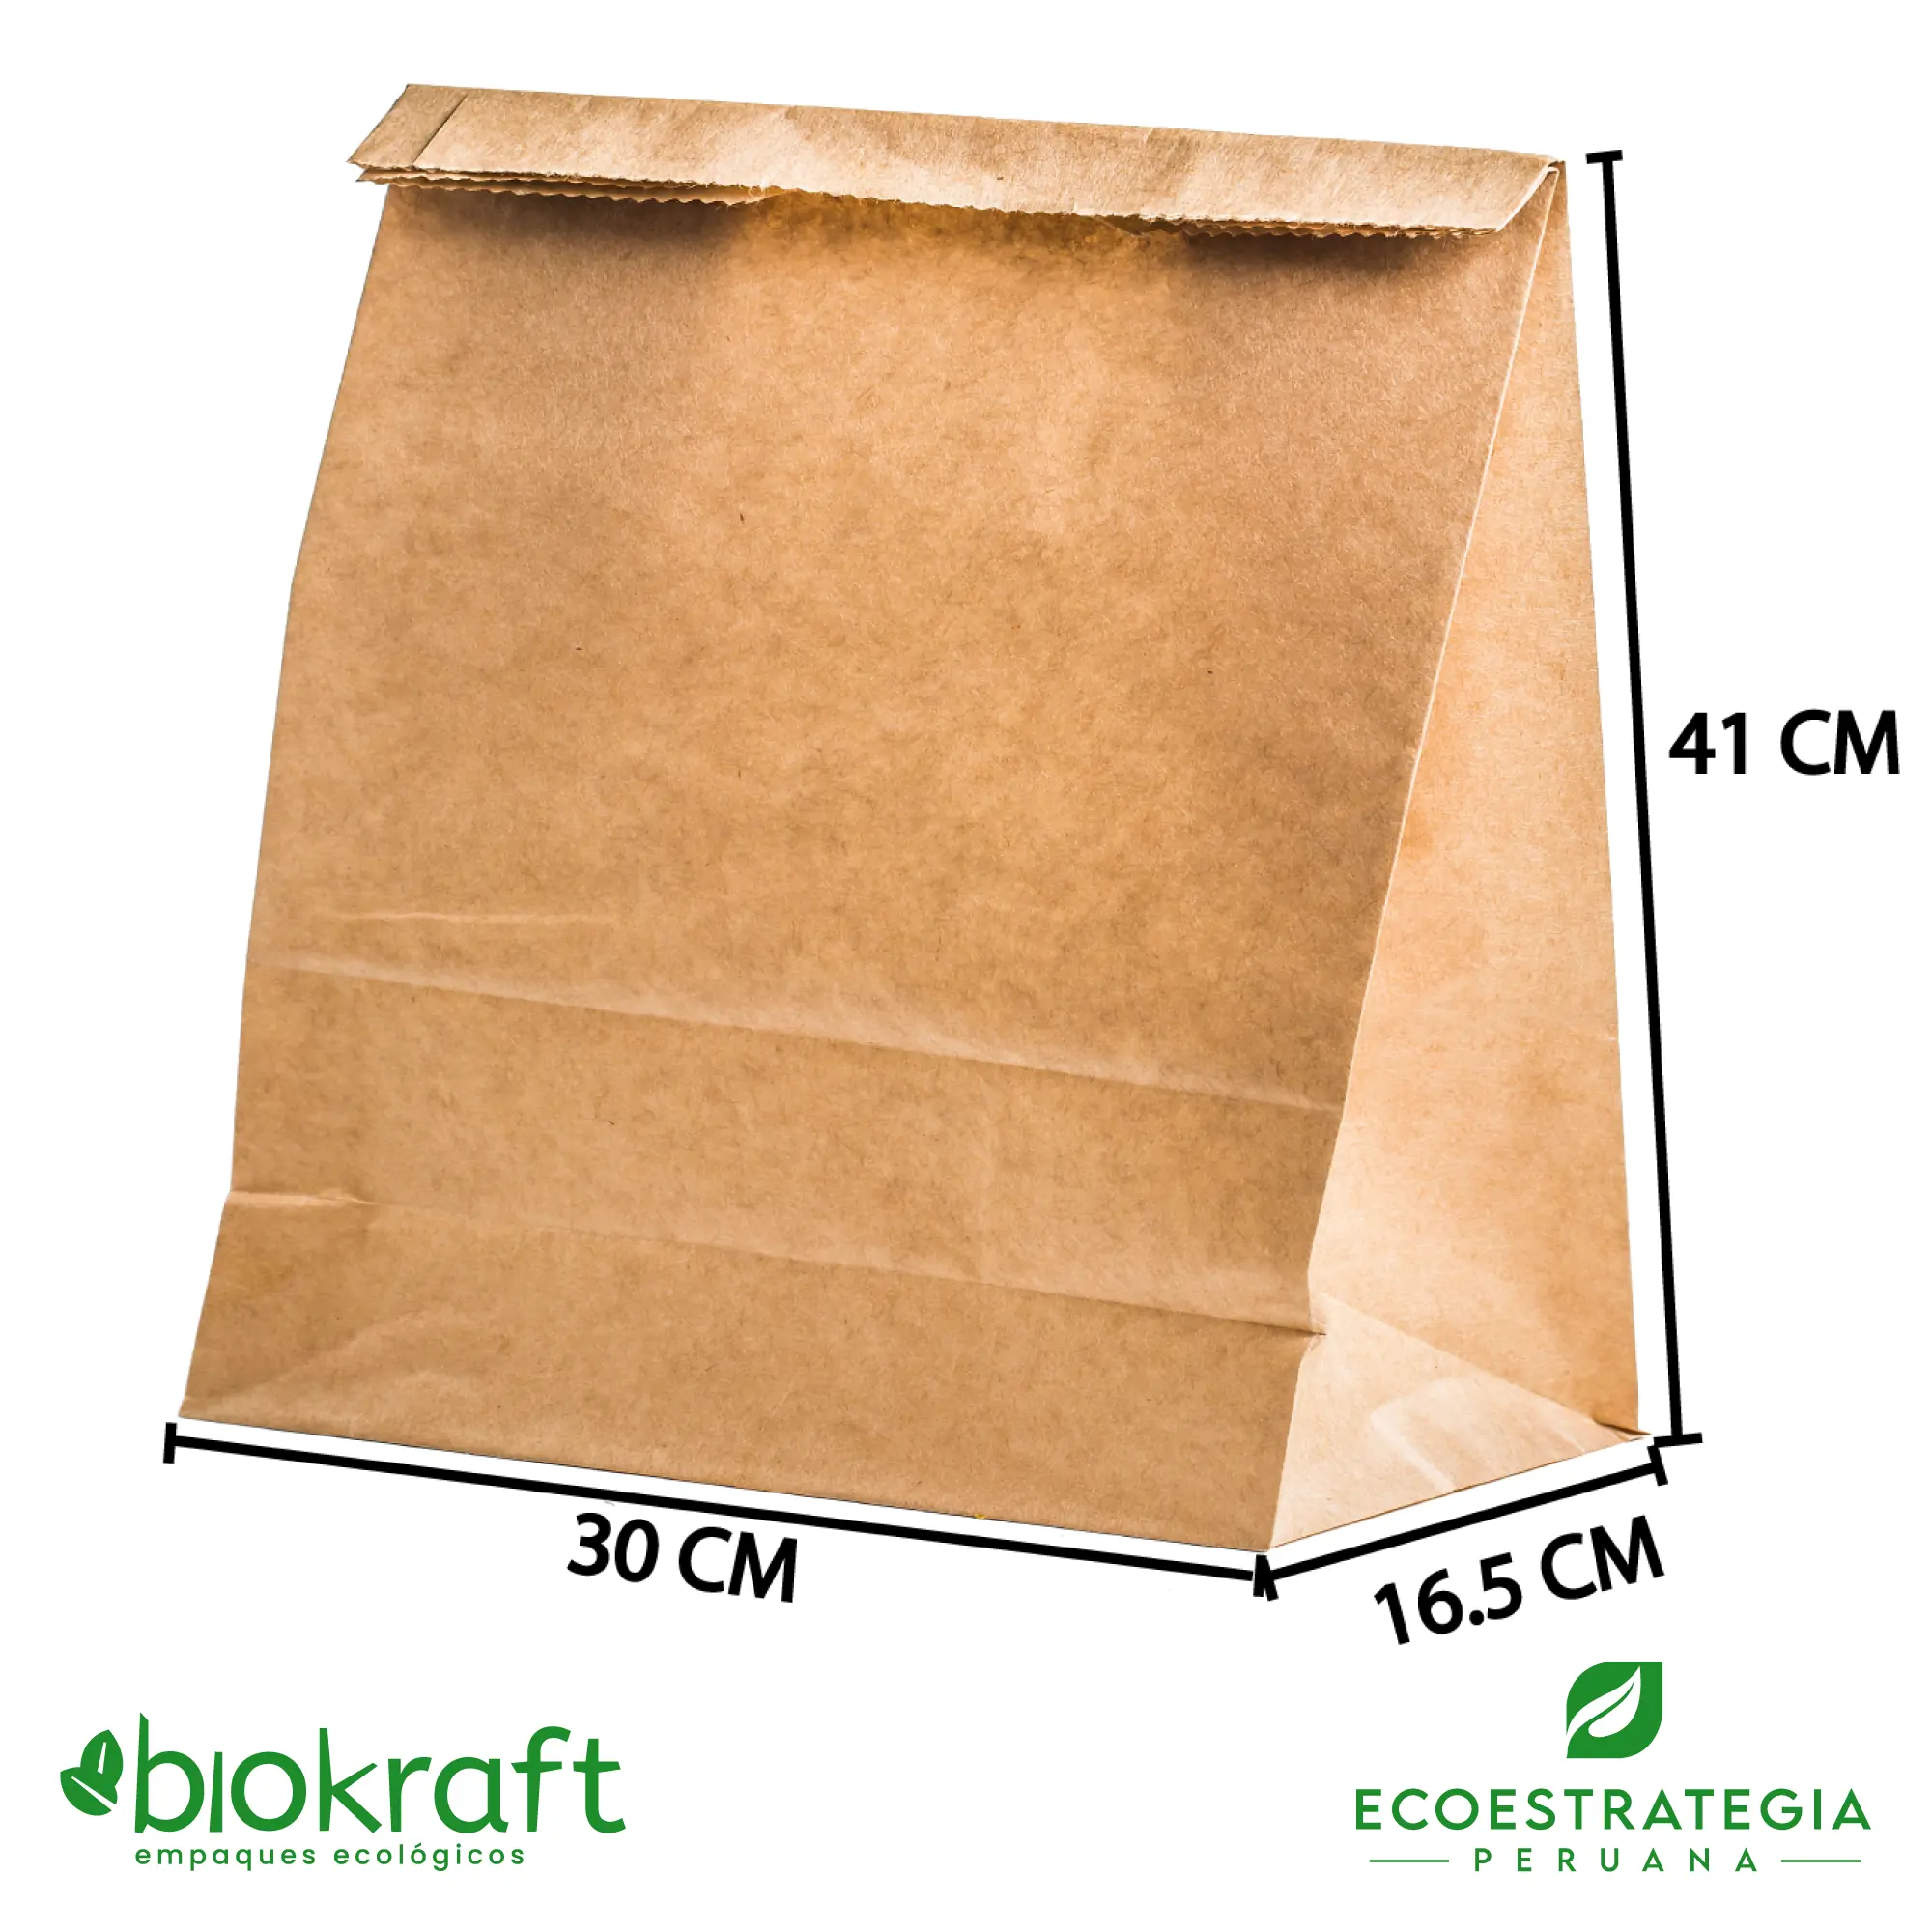 El modelo BRSA-LARGA es una bolsa de papel kraft brasa larga biodegradable y es conocido también como bolsa brasa larga de papel estraza. Cuenta con un grosor de 80gr, altamente resistente para peso y muy personalizable, Cotiza ahora con tu logo personalizado